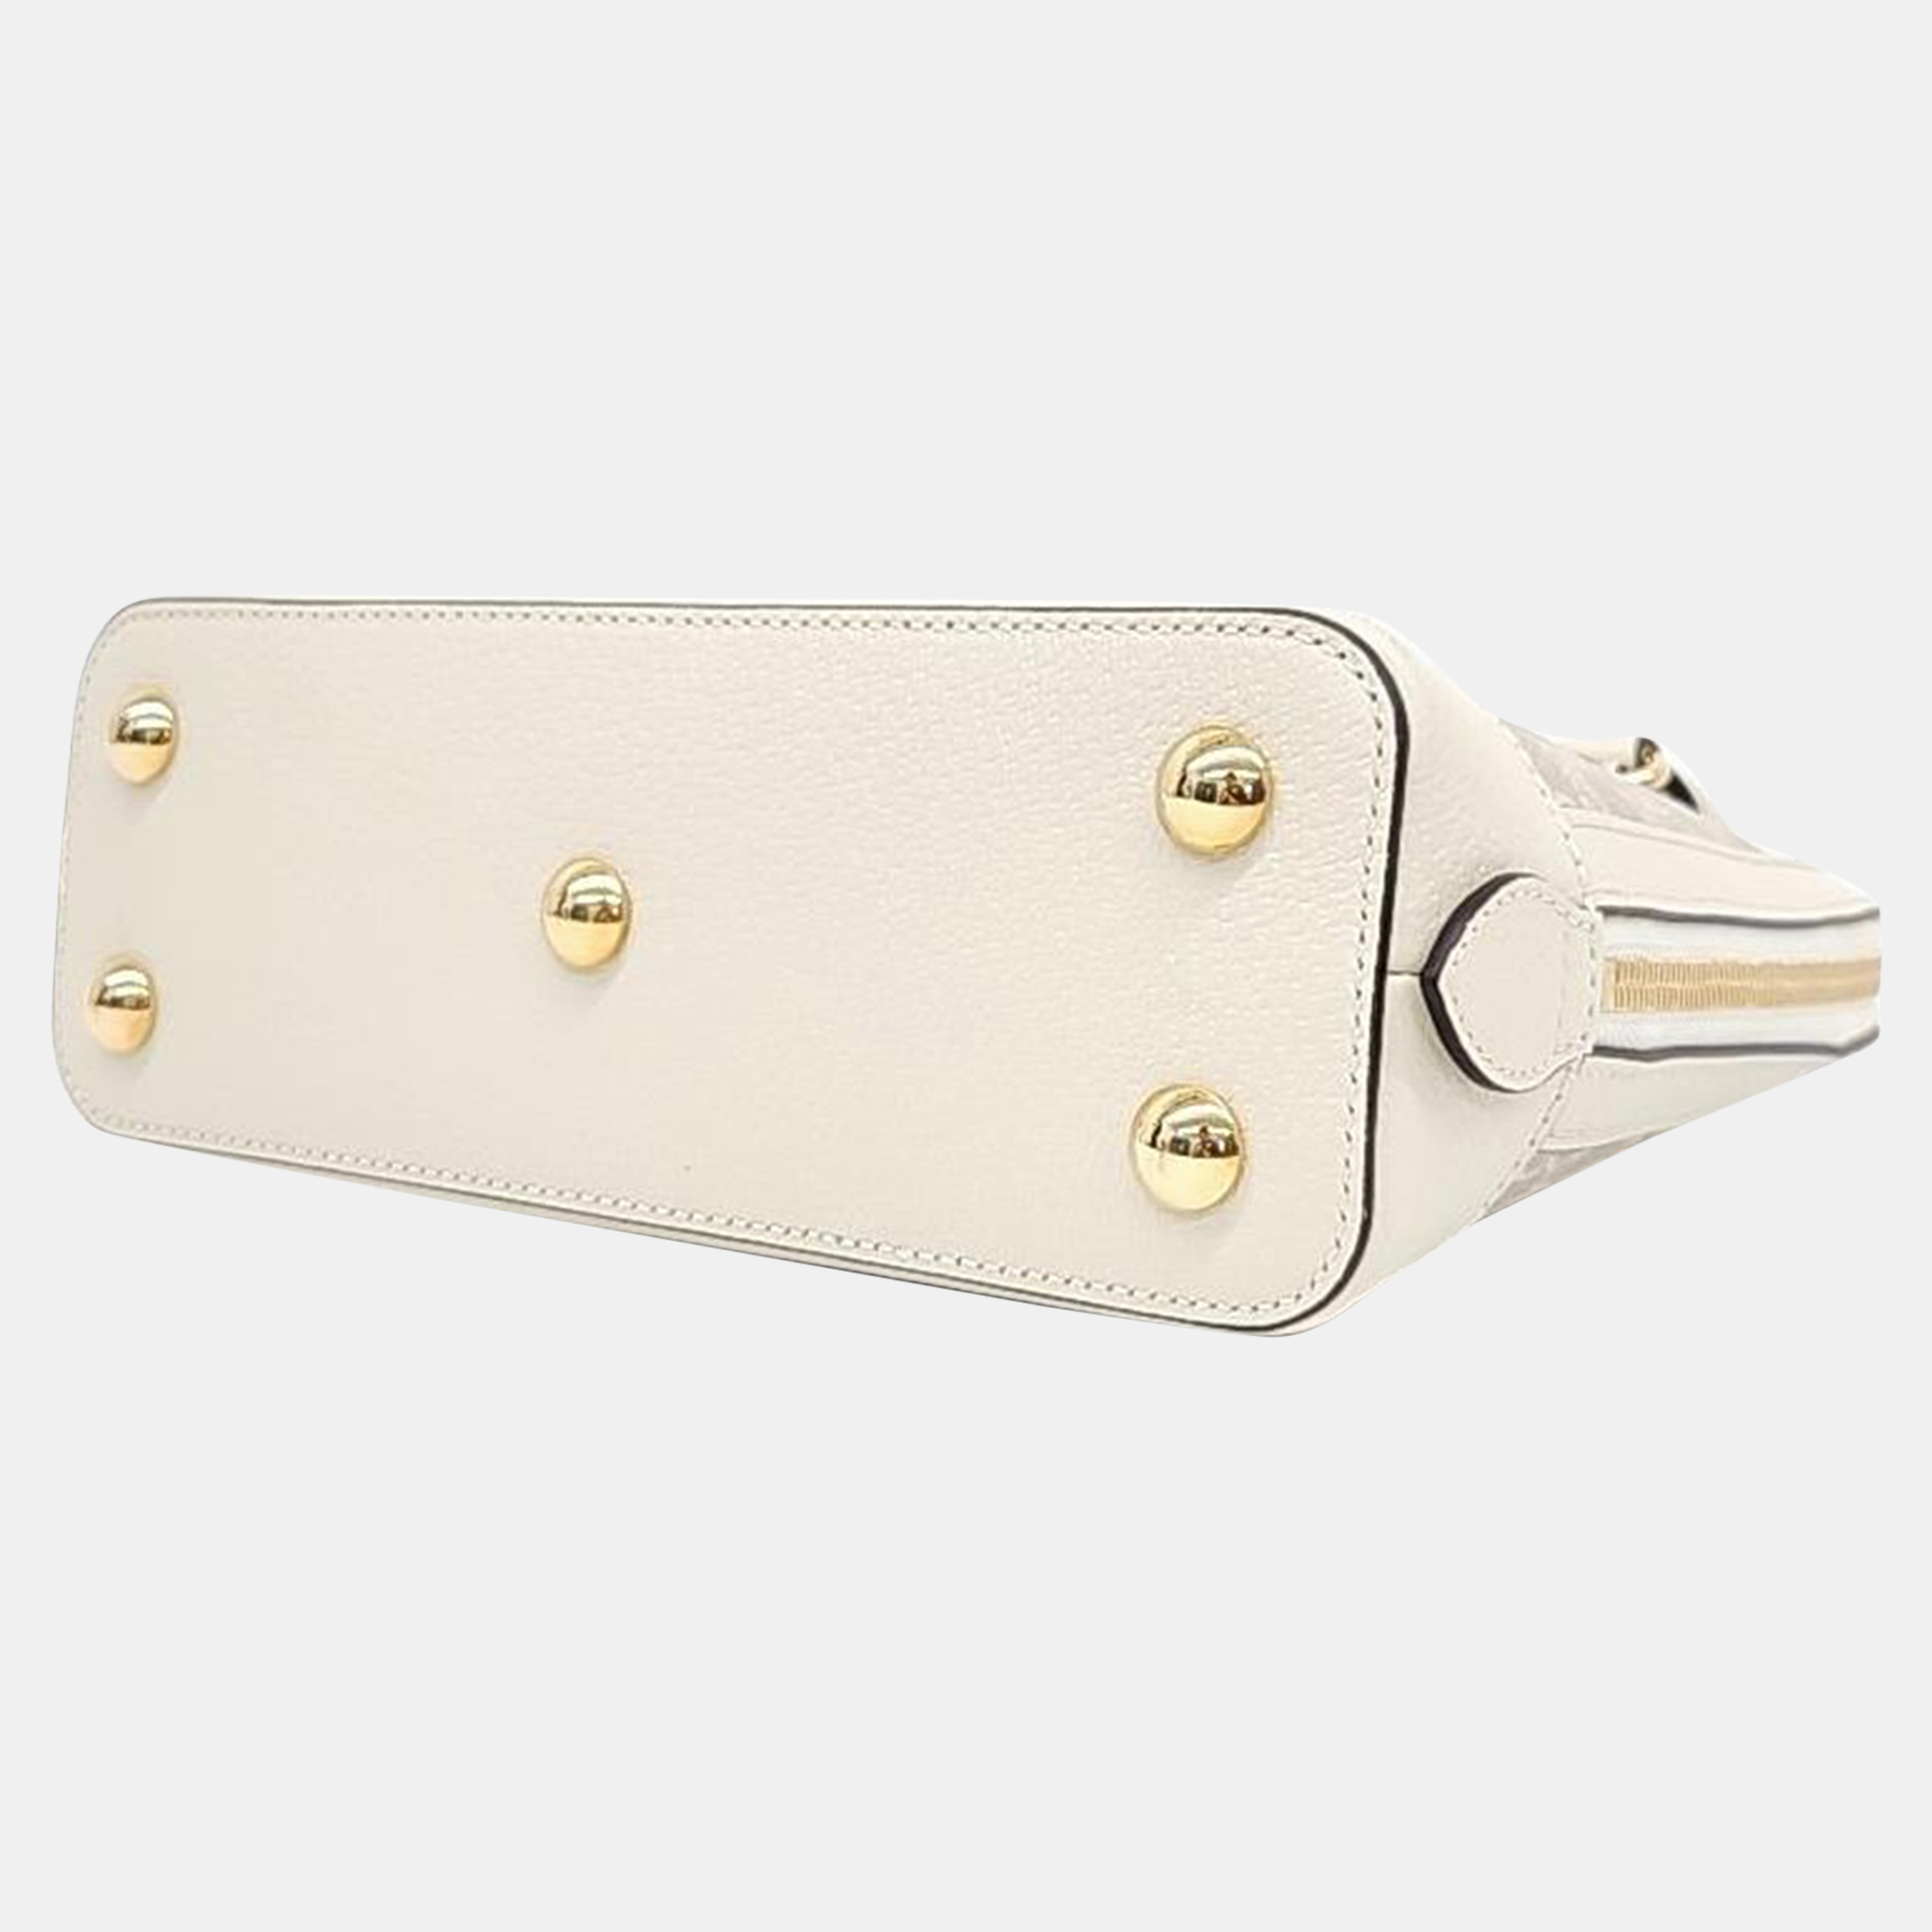 Gucci 1955 Horsebit Top Handle Bag Small